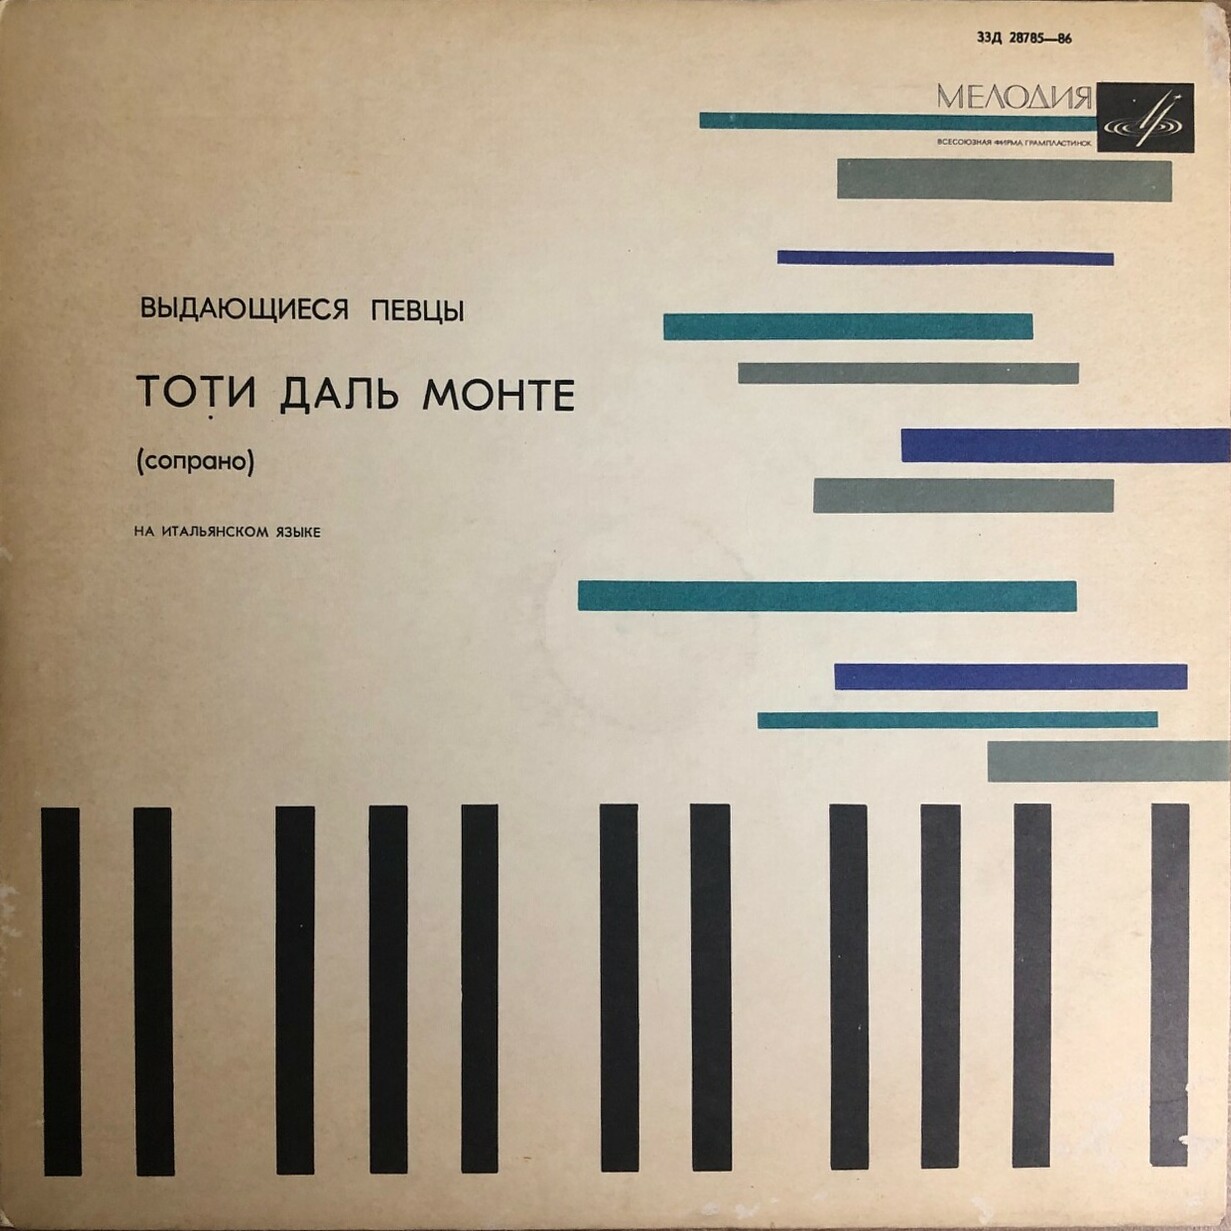 Тоти Даль Монте, сопрано ("Выдающиеся певцы")